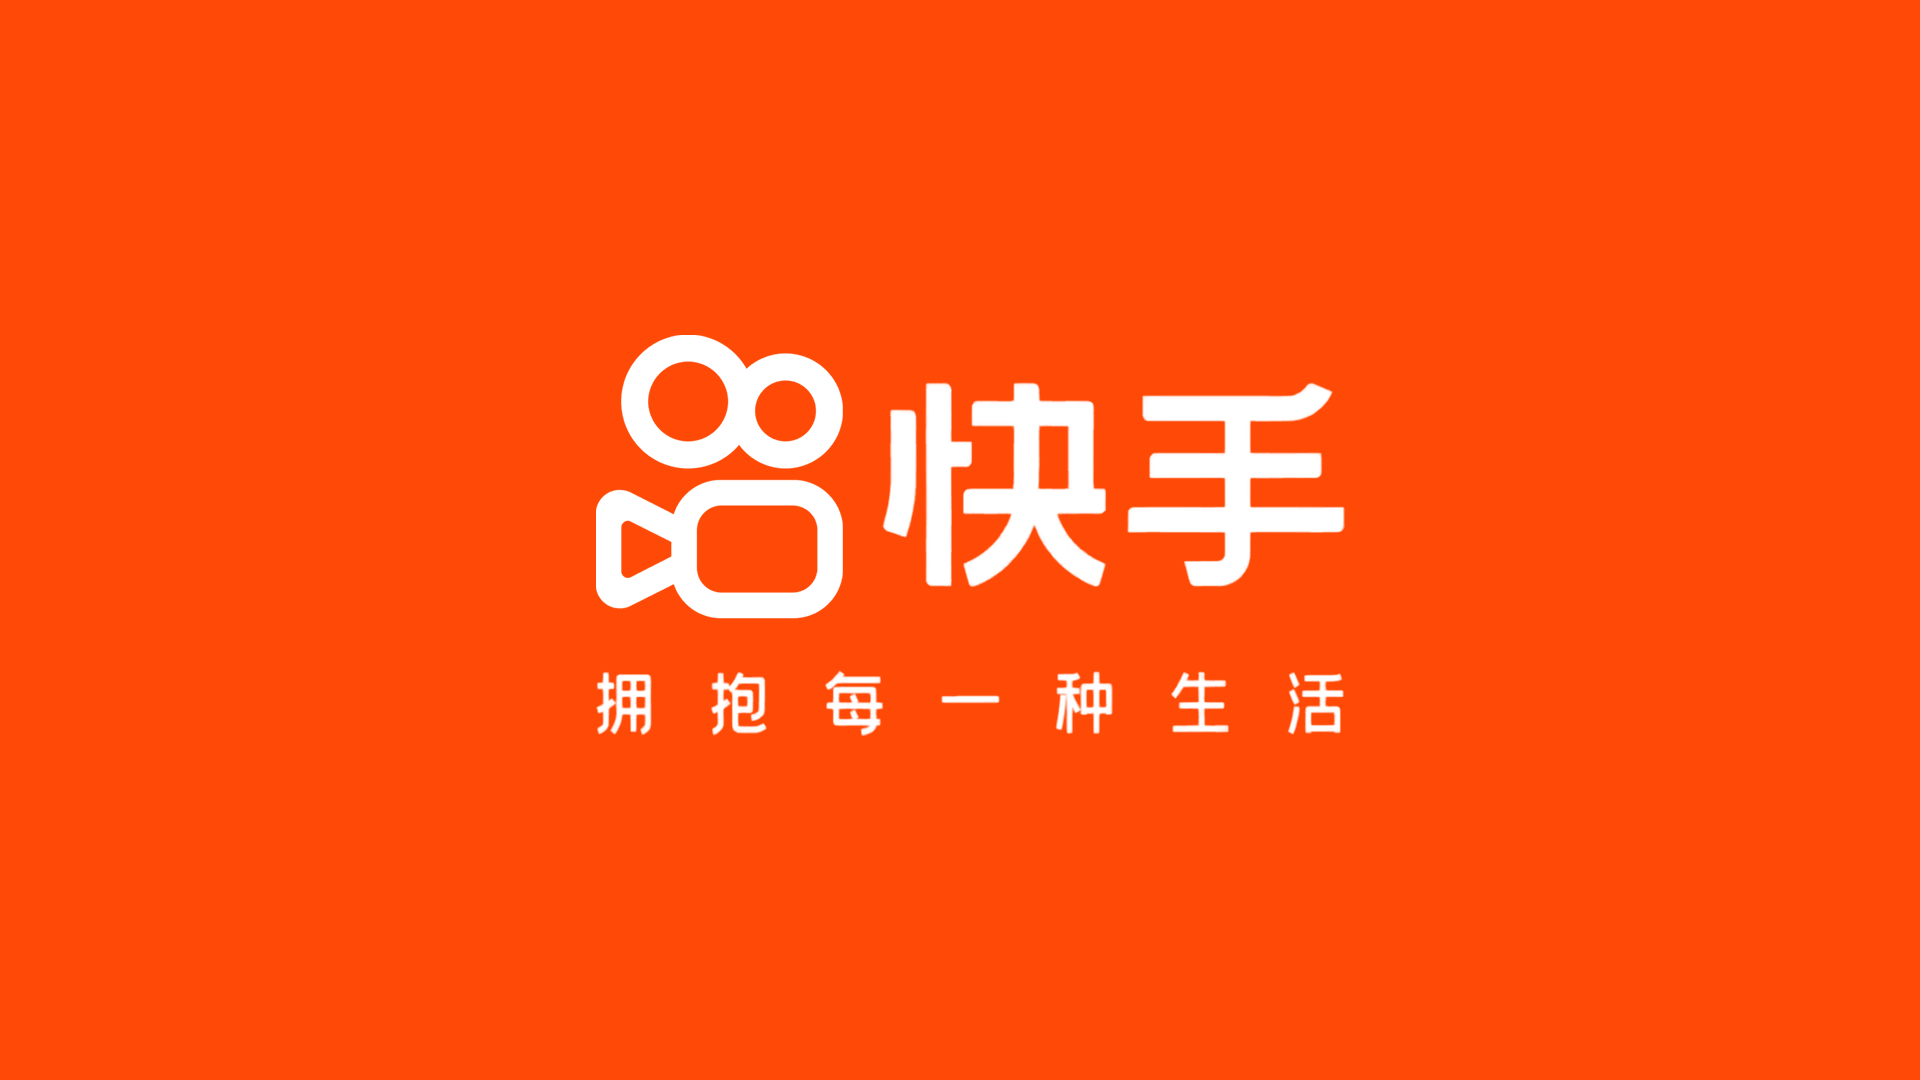 短视频社区快手新logo